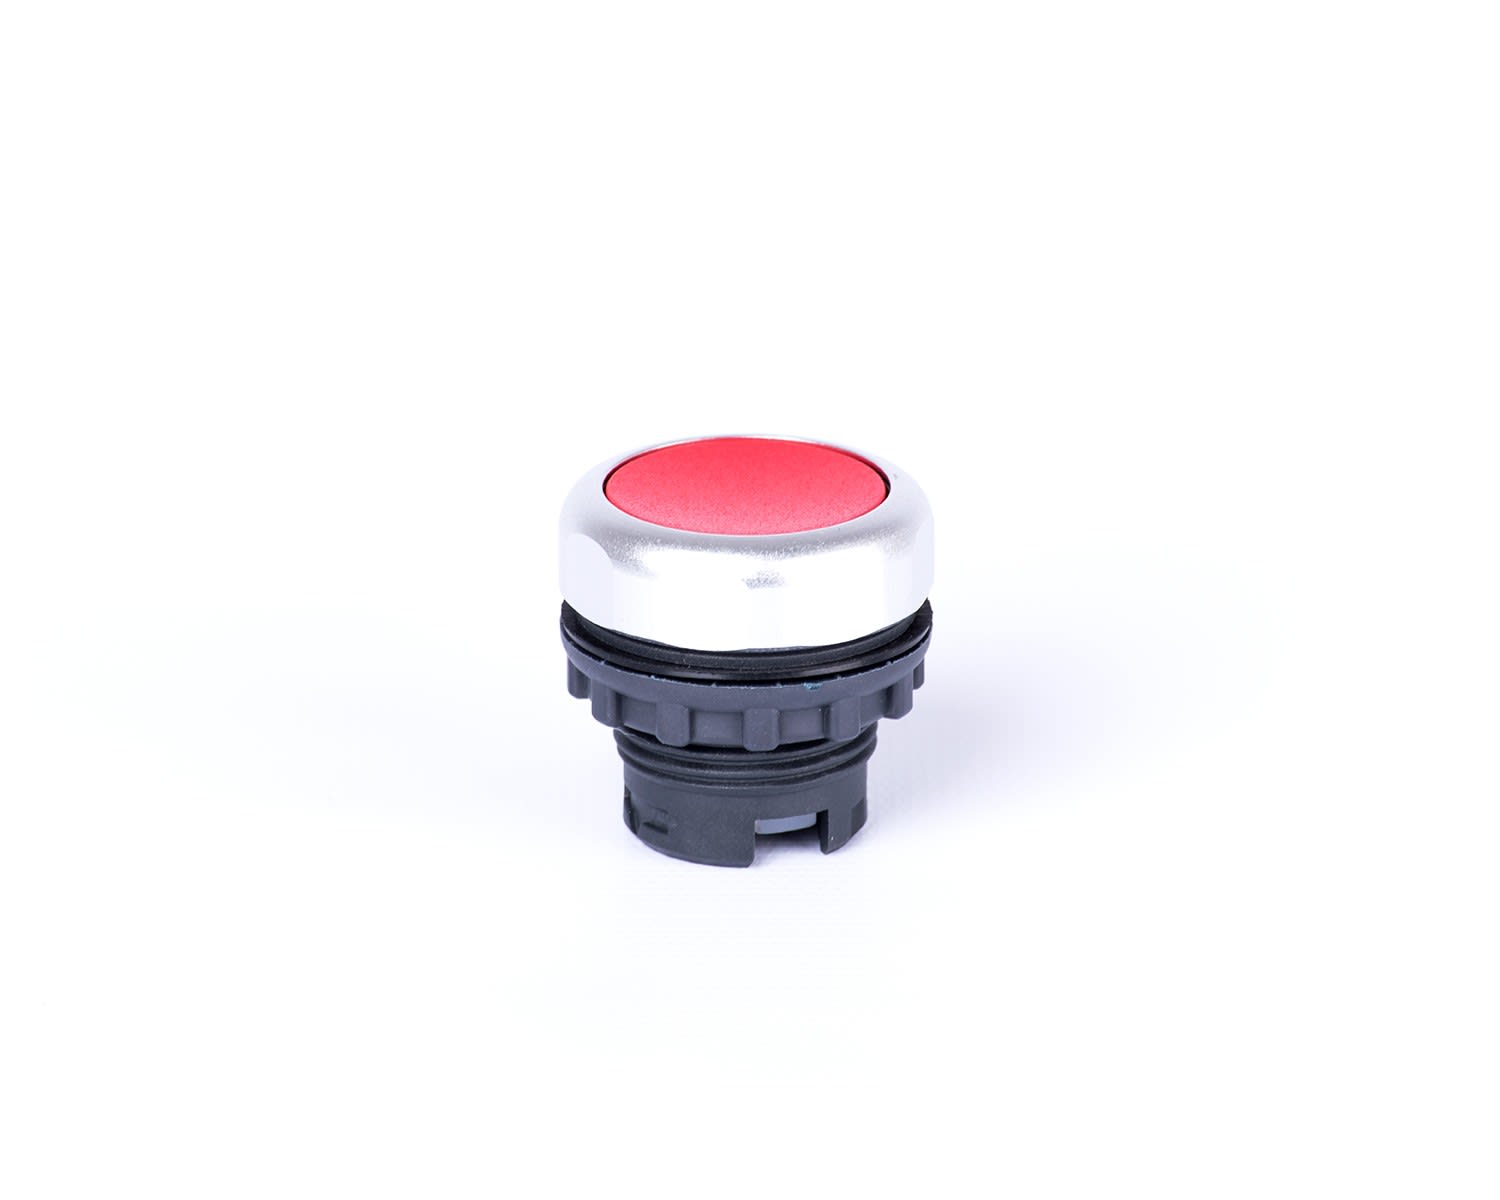 Madenr - Bouton poussoir Ex9P1 momentané, 40mm, sans éclairage LED, rouge